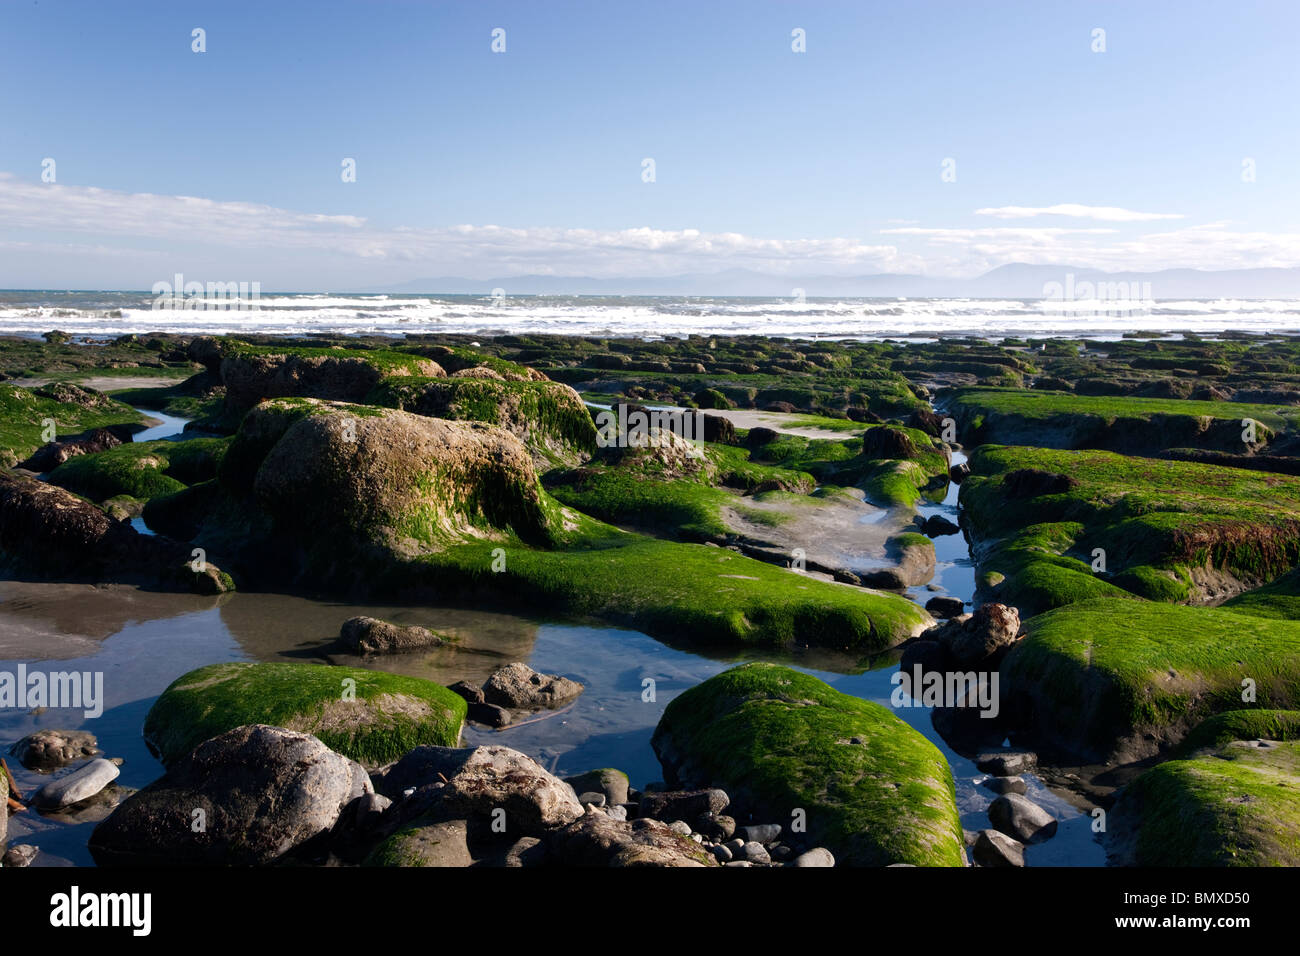 Menos marea, Costa Norte del Pacífico, exponiendo a estructuras de piedra y flora marina. Foto de stock